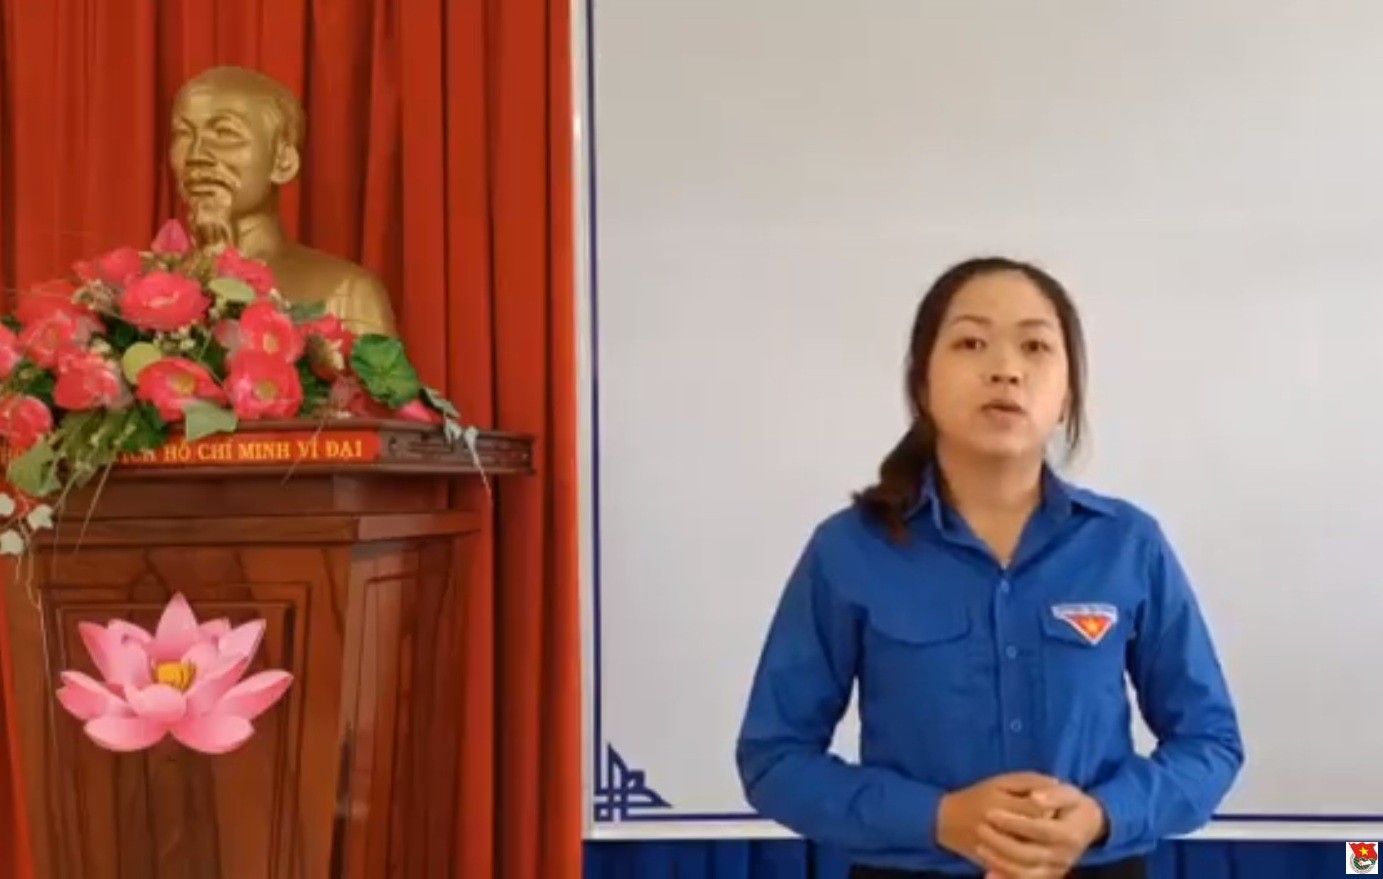 Thí sinh Lê Thị Thiên đạt giải Ba tại Hội thi Báo cáo viên cấp tỉnh năm 2021